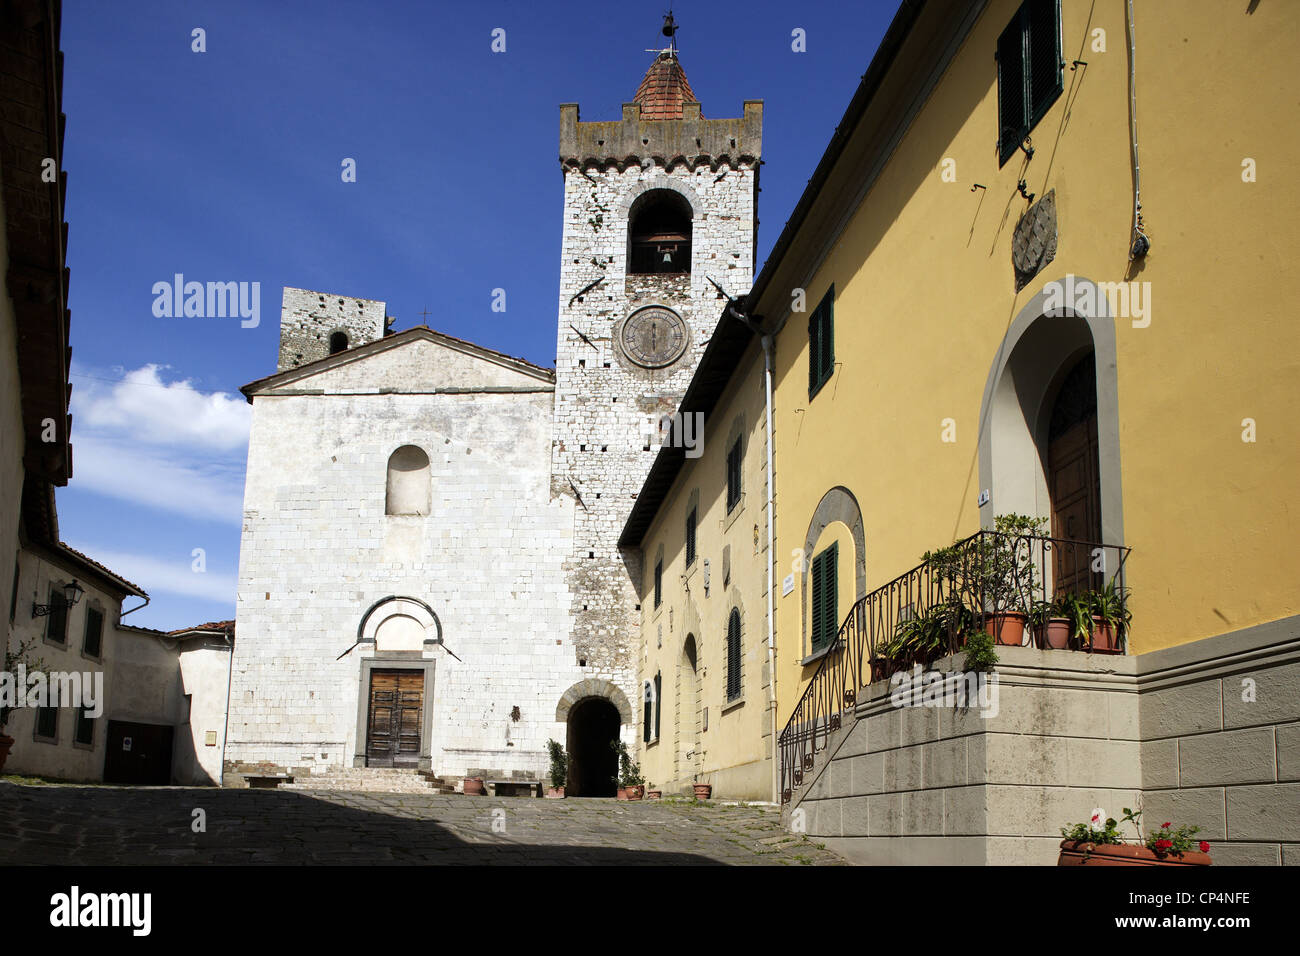 The church of Saint Stephen, 13th century. Serravalle Pistoiese, Pistoia Province, Tuscany Region, Italy. Stock Photo